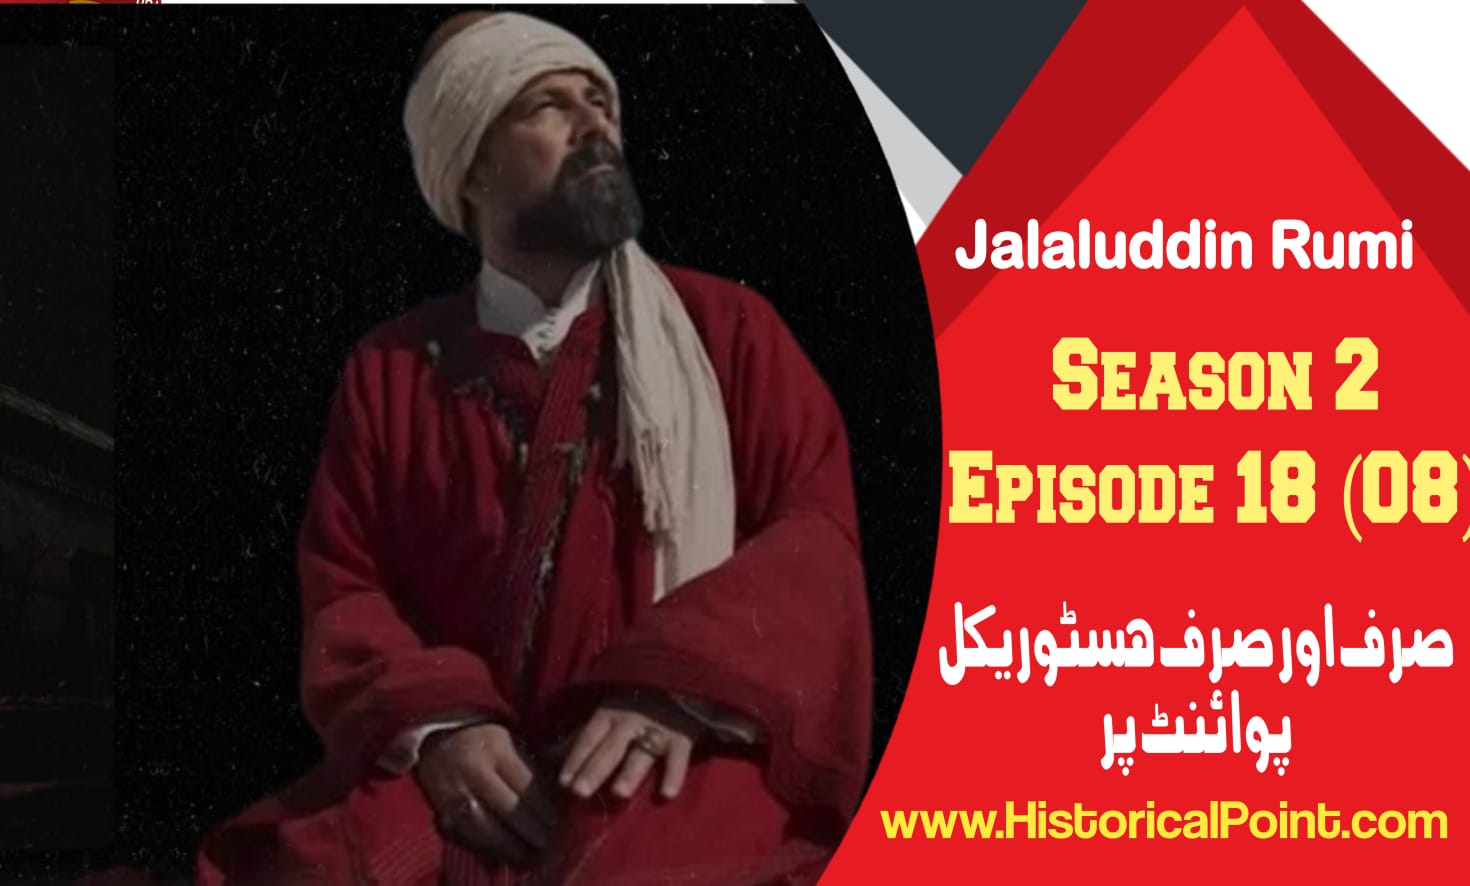 Jalaluddin Rumi Episode 18